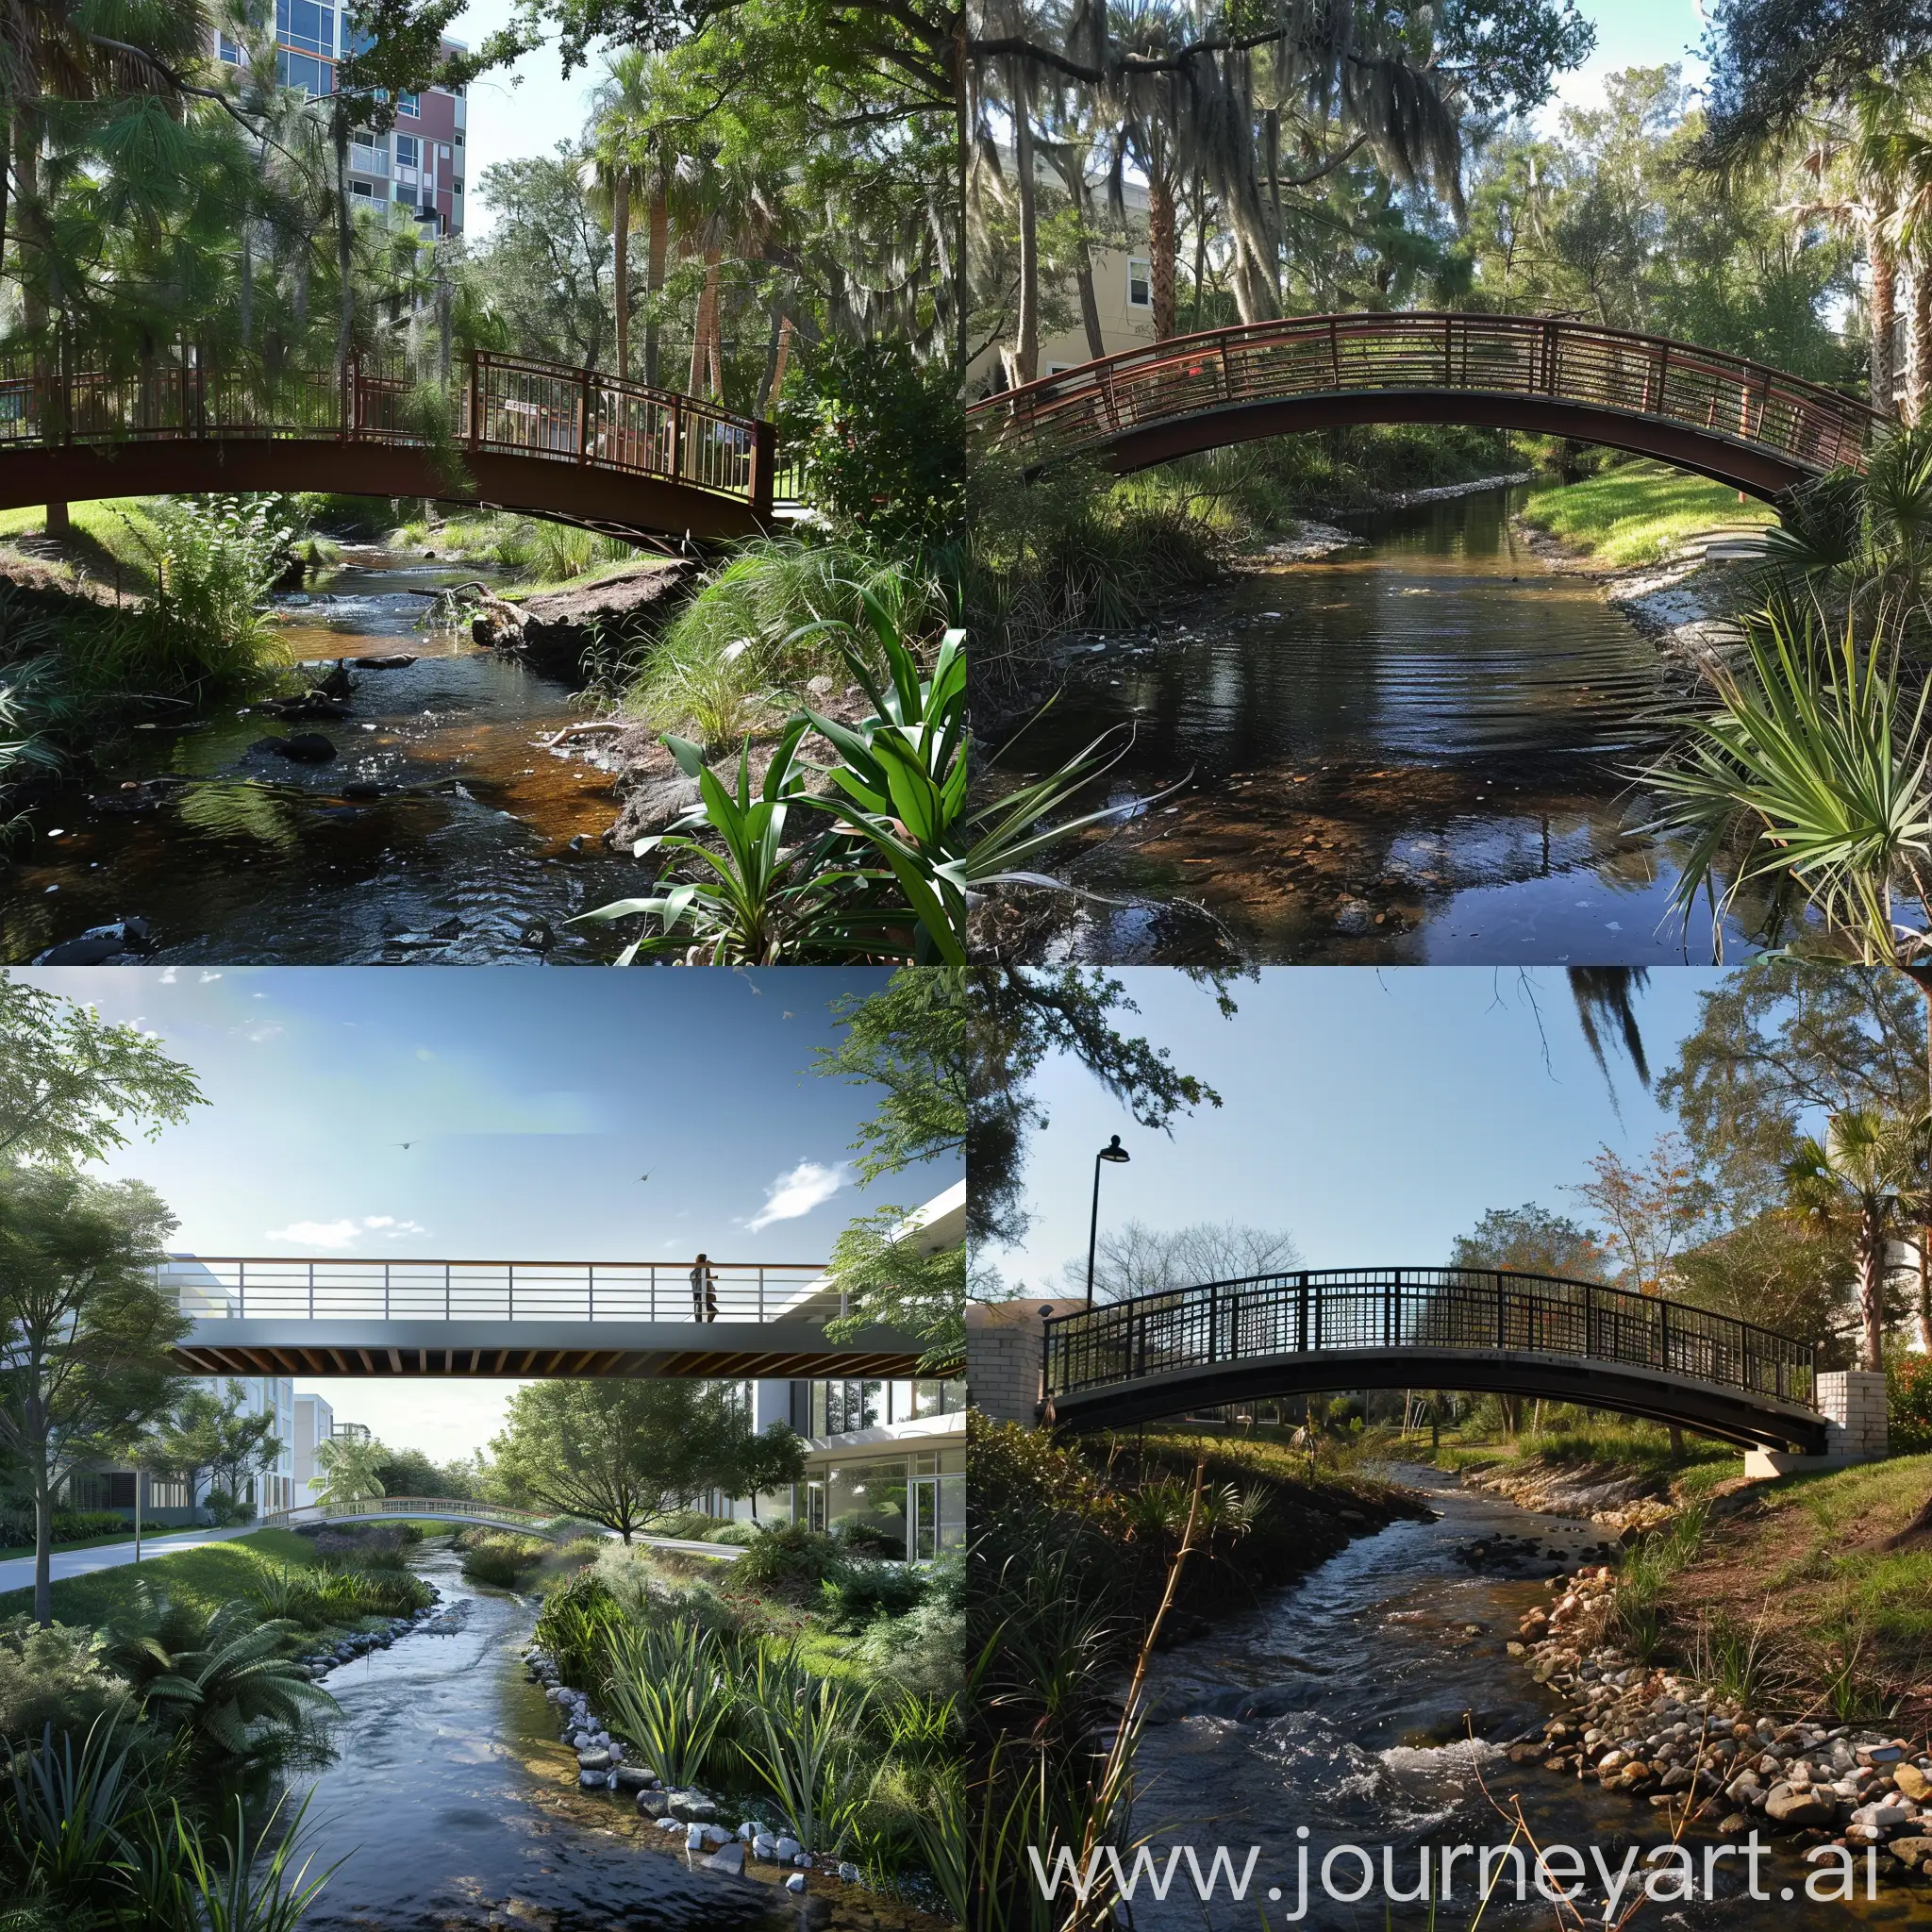 imagine a pedestrian bridge crossing a stream in urban Florida landscape